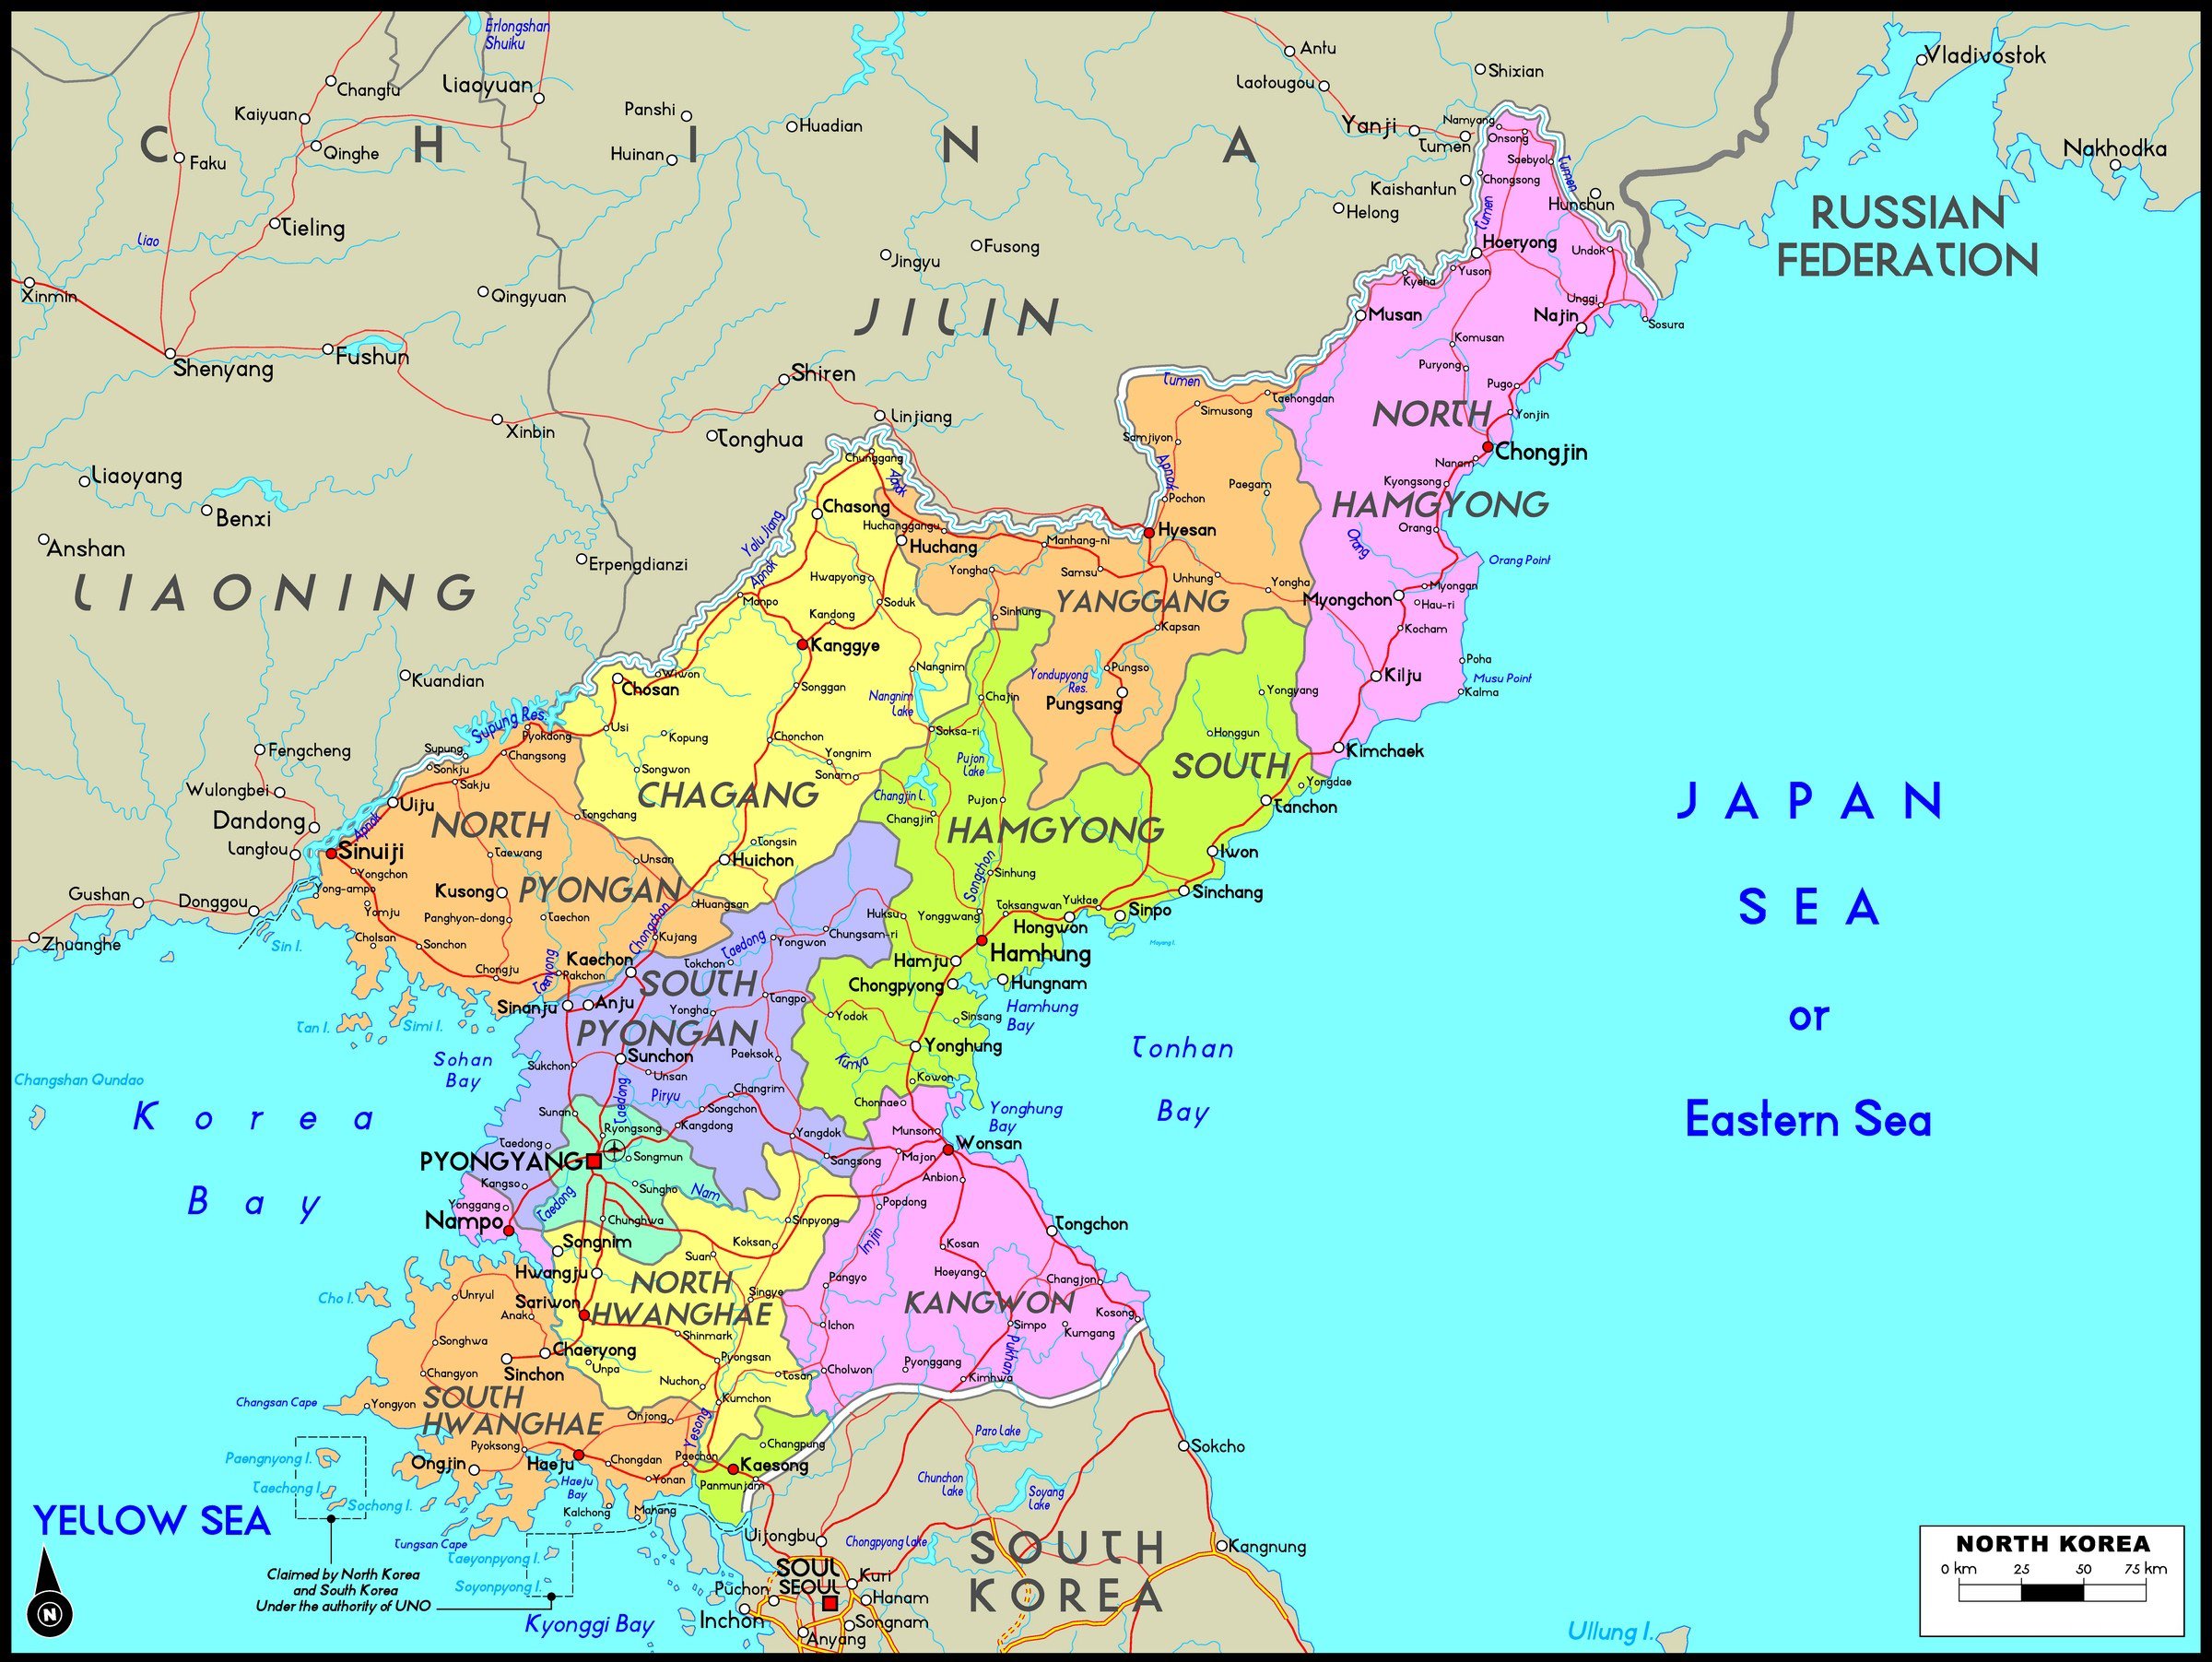 где находится северная корея на карте мира